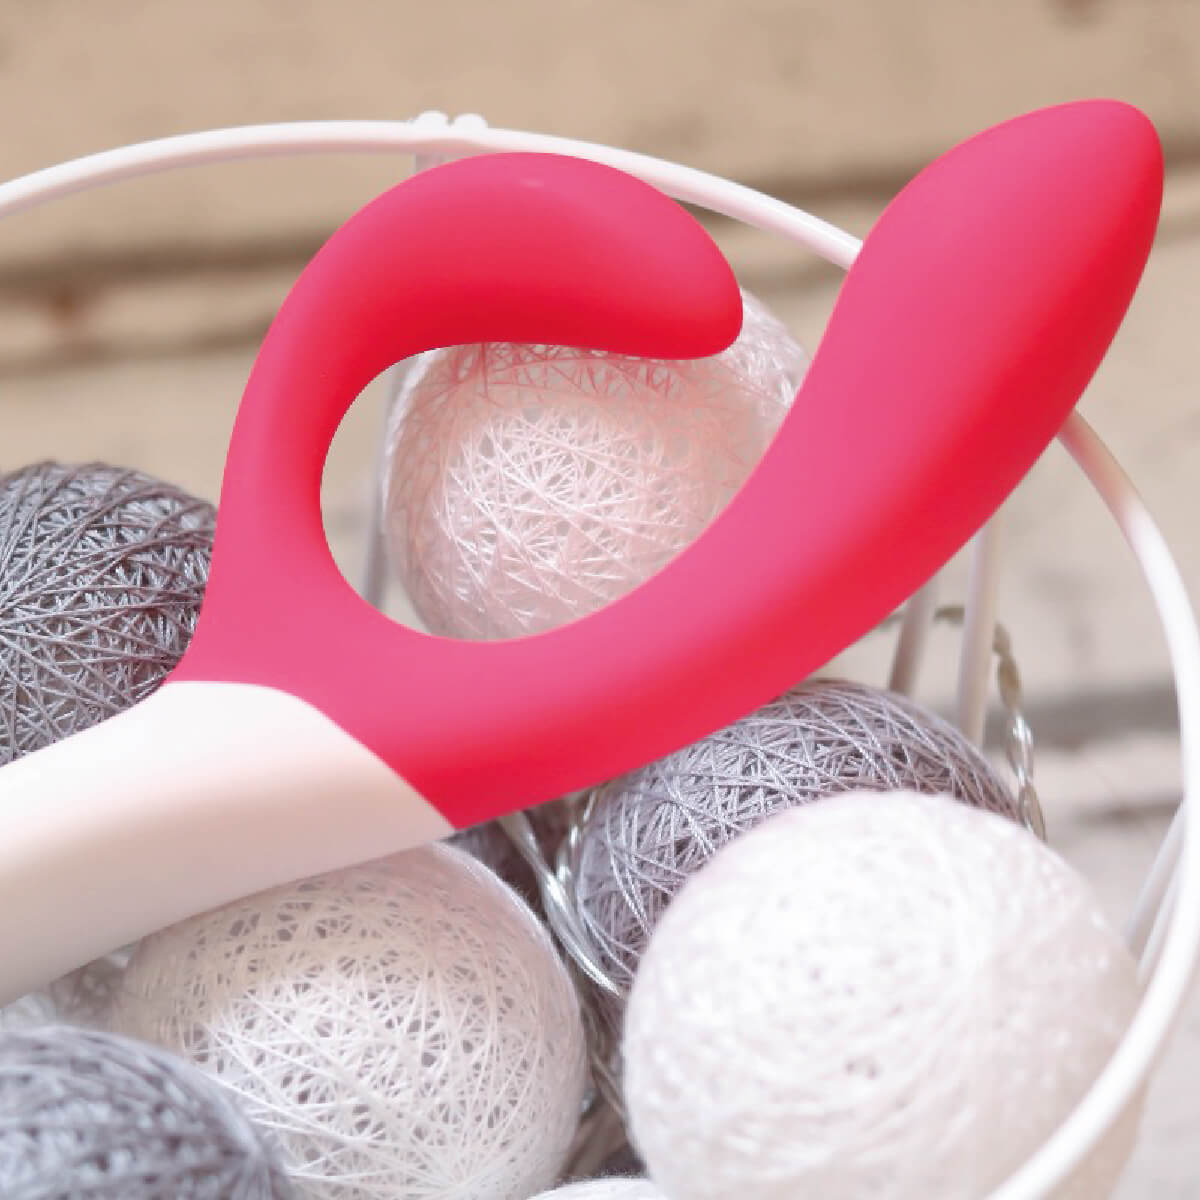 The G-Spot clitoris rabbit vibrator Nova by We-Vibe - Product image